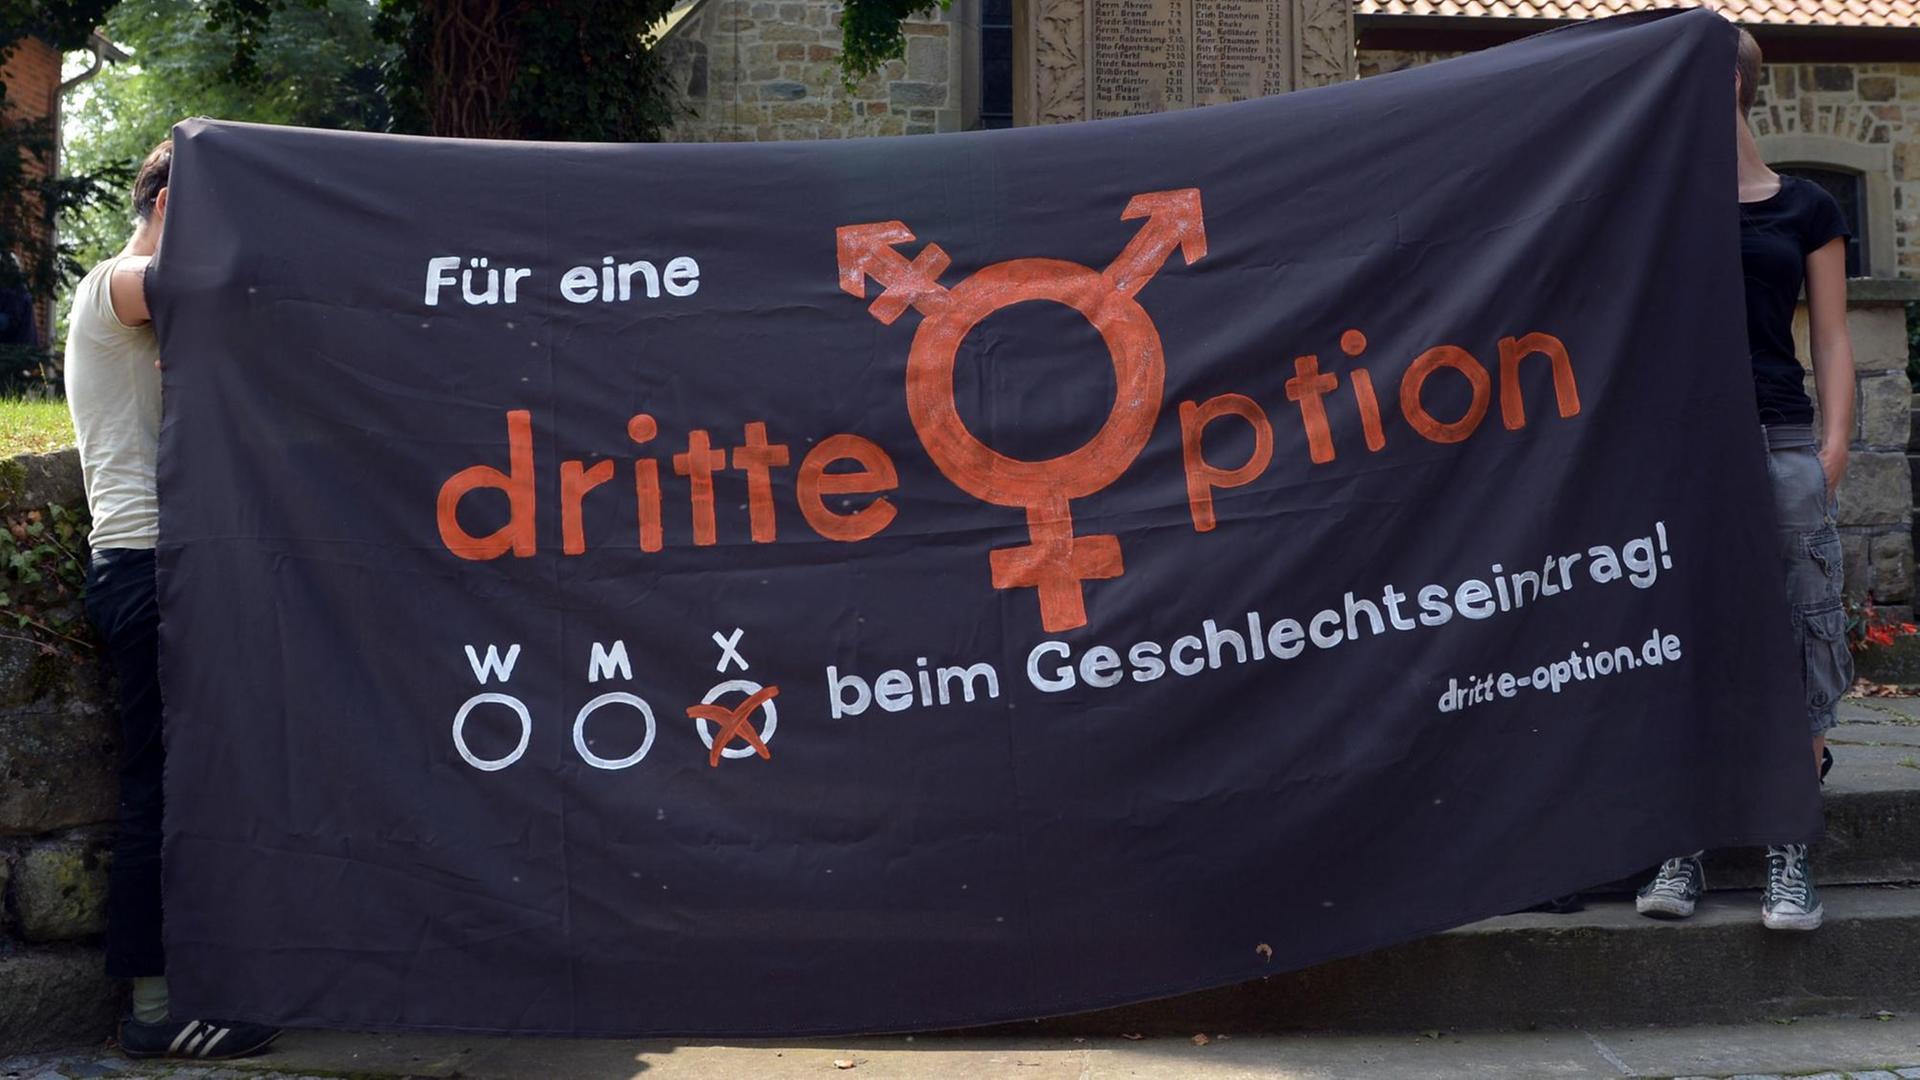 Zwei Personen halten ein Banner, auf dem steht: "Für eine dritte Option beim Geschlechtseintrag"